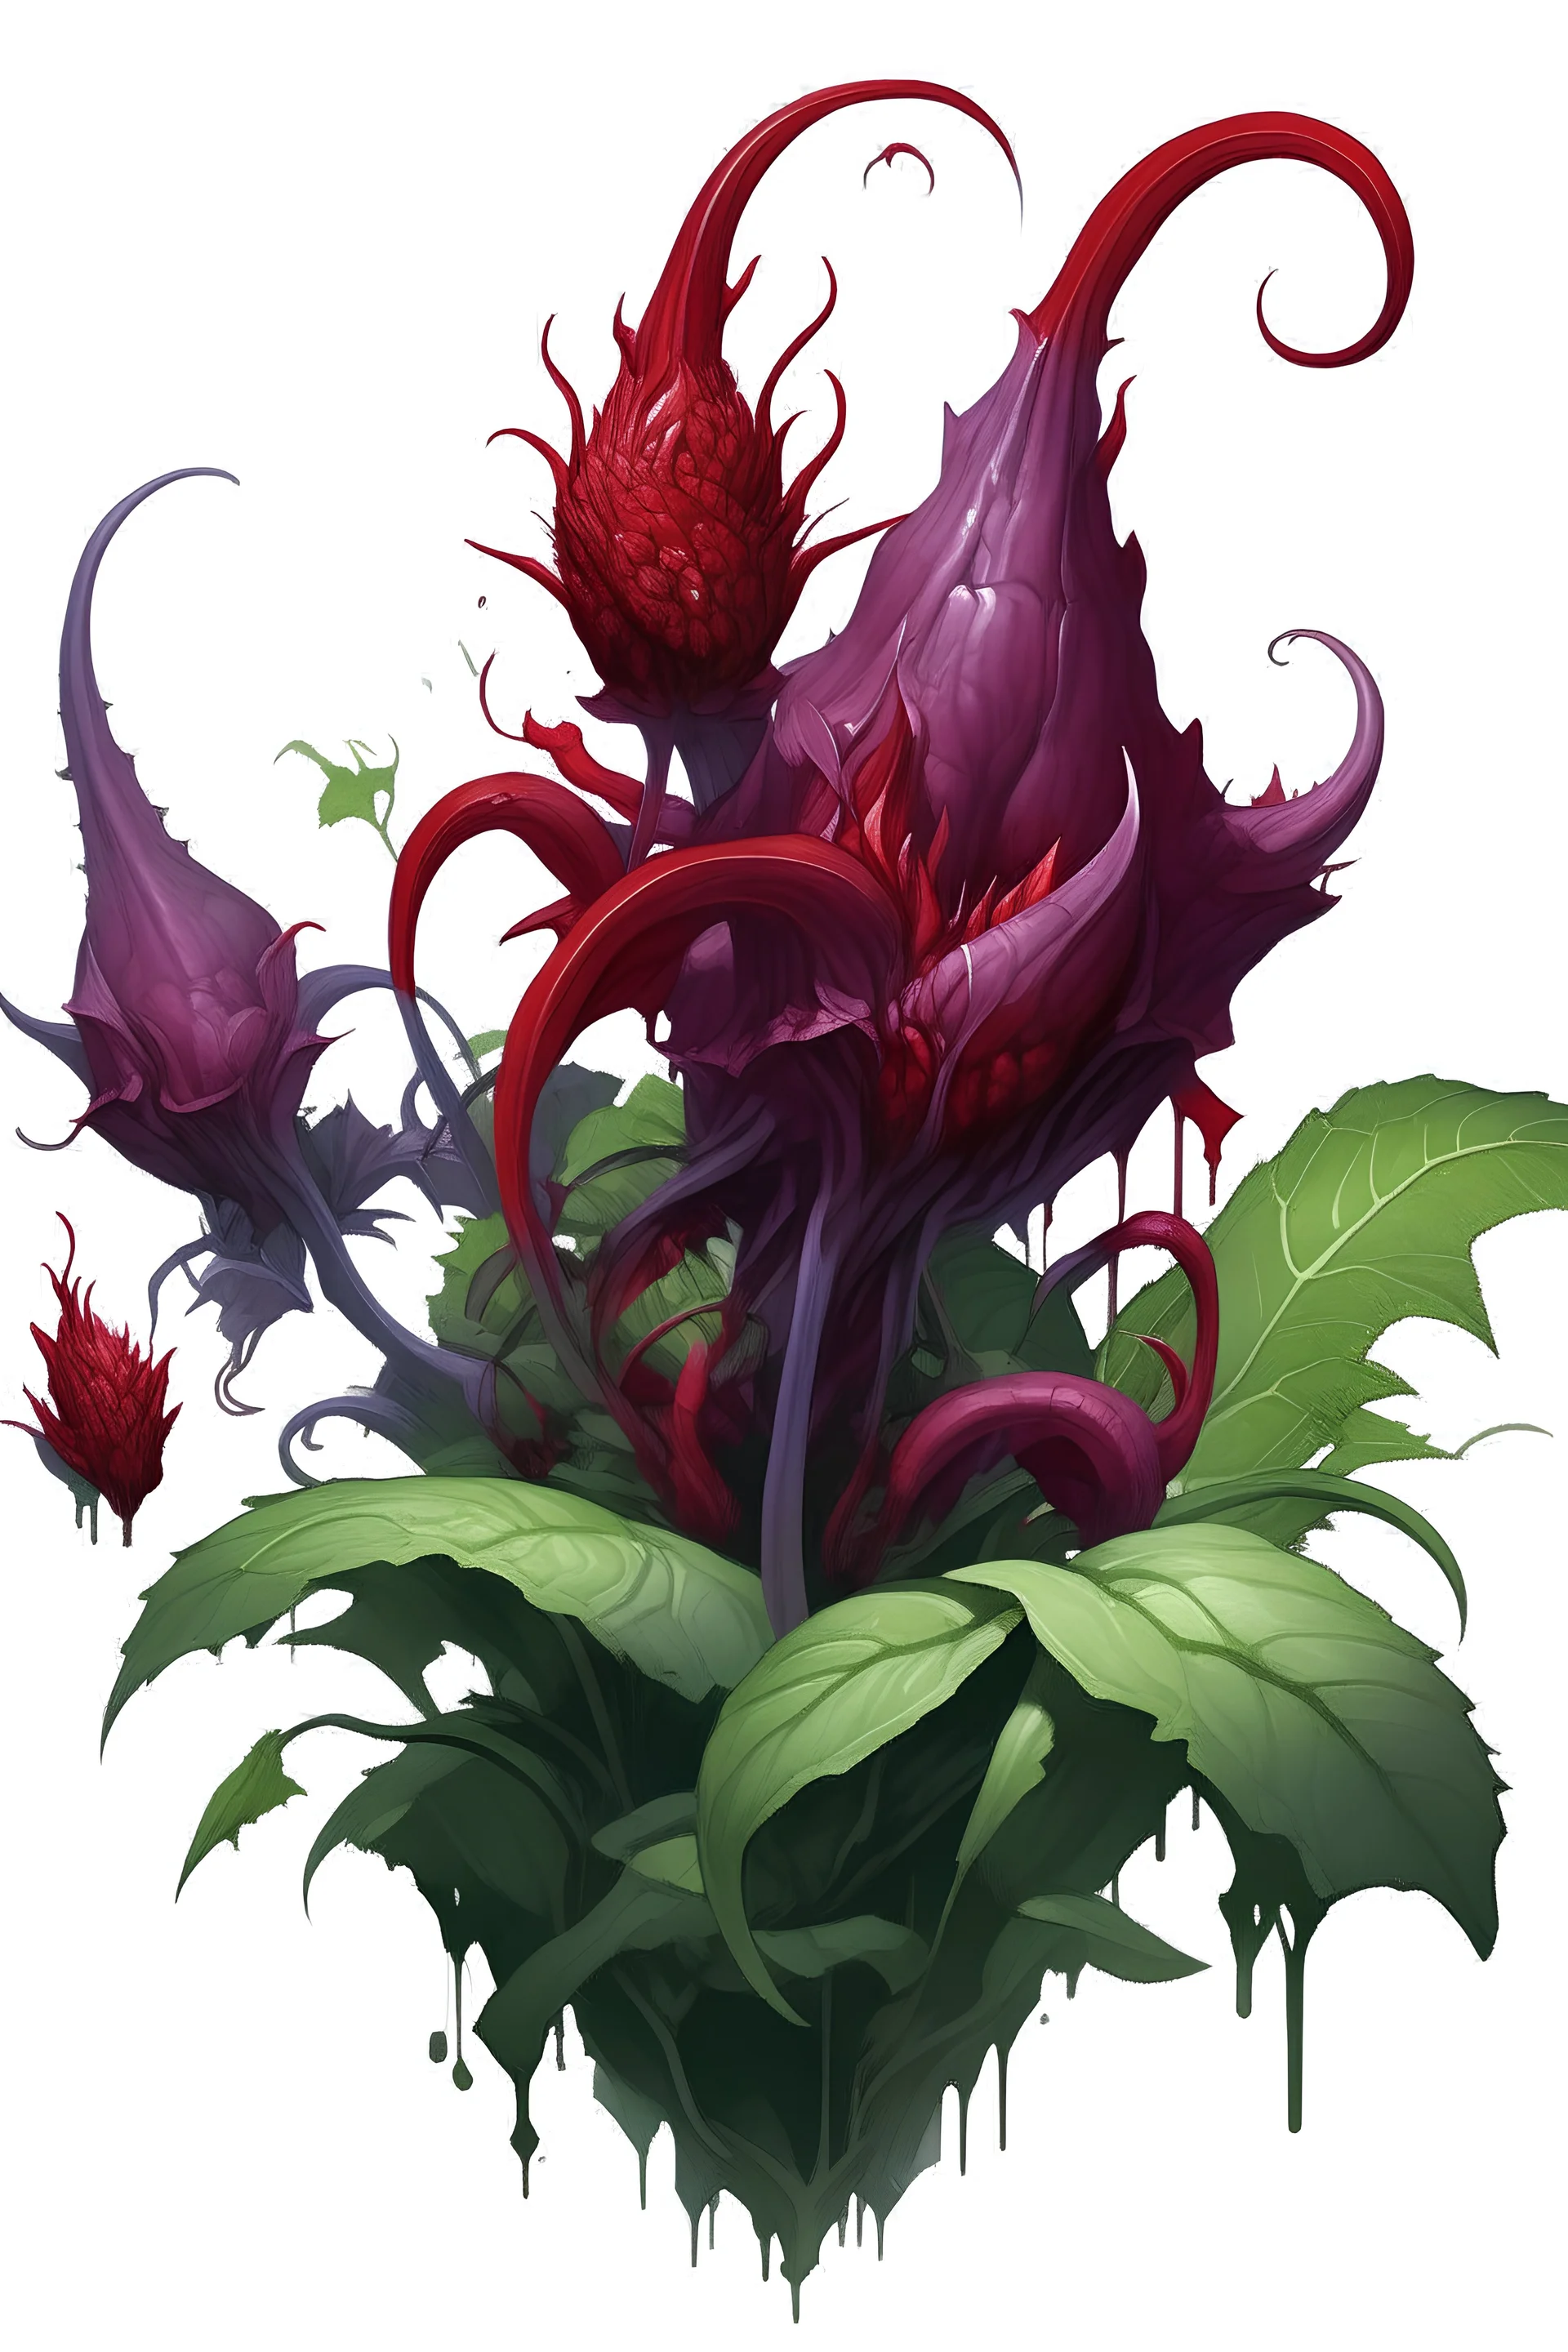 zehirli bitki, mor ve kırmızı renklerde, epik sıra dışı görünümlü bir bitki,artstaion